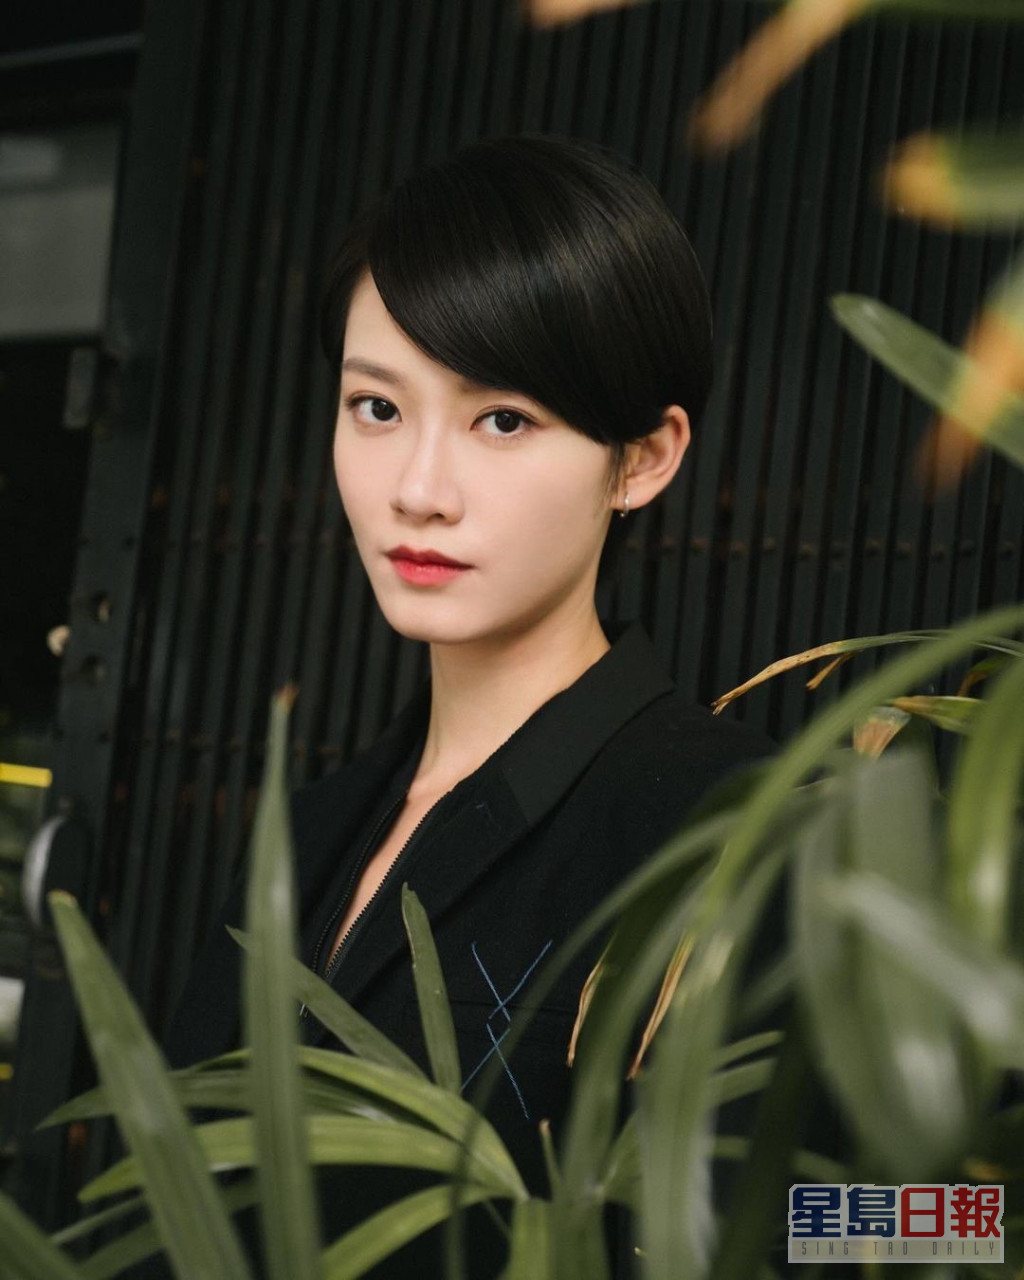 電影版「山本未來」一角由金像獎女配角廖子妤演出。